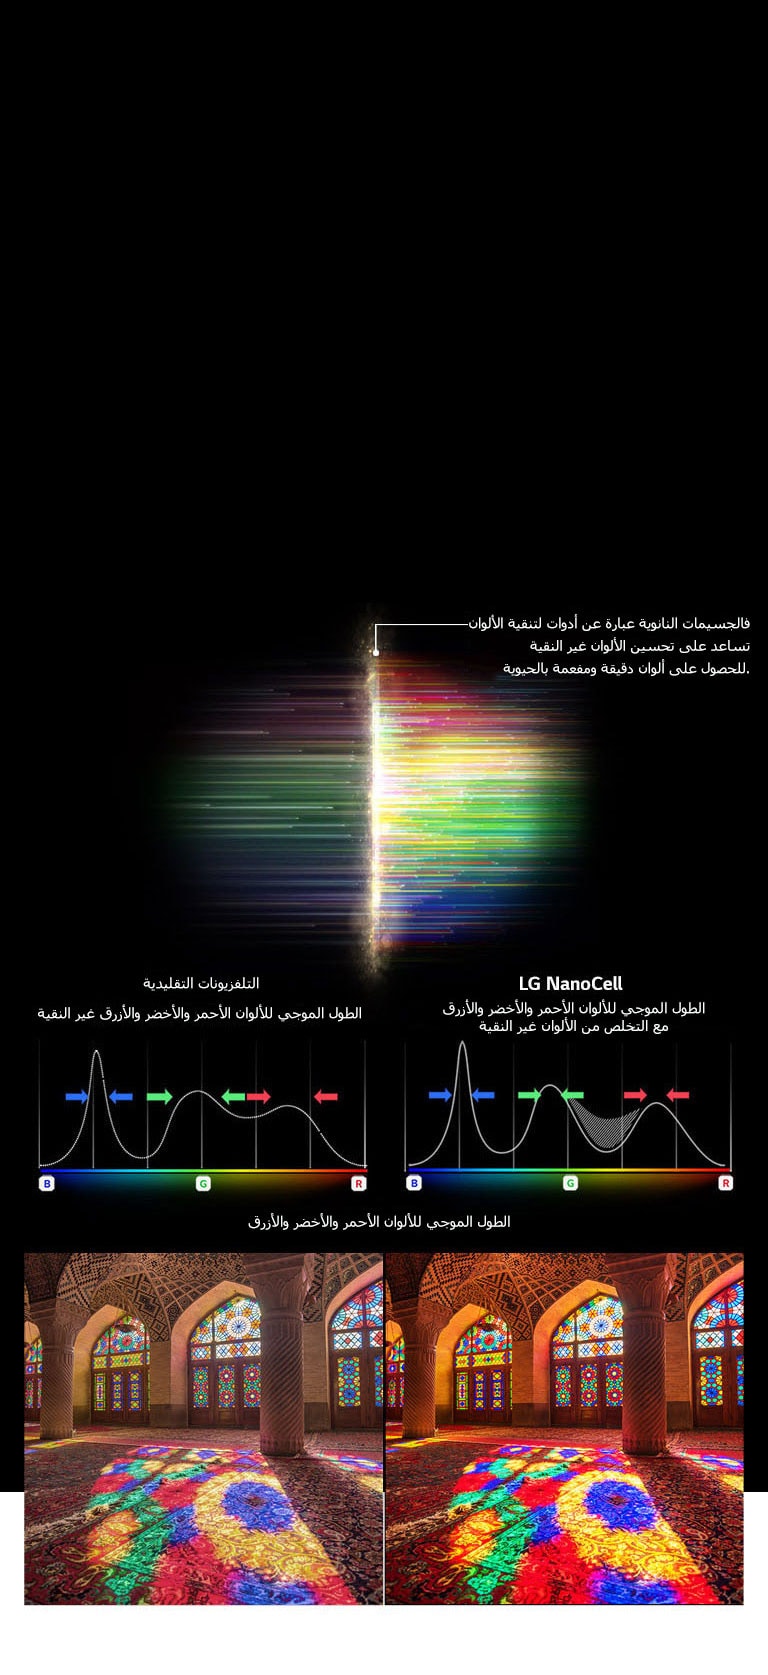 الرسم البياني للطيف RGB الذي يوضح تصفية الألوان الباهتة والصور التي تقارن نقاء الألوان بين التقنية التقليدية و NanoCell Tech